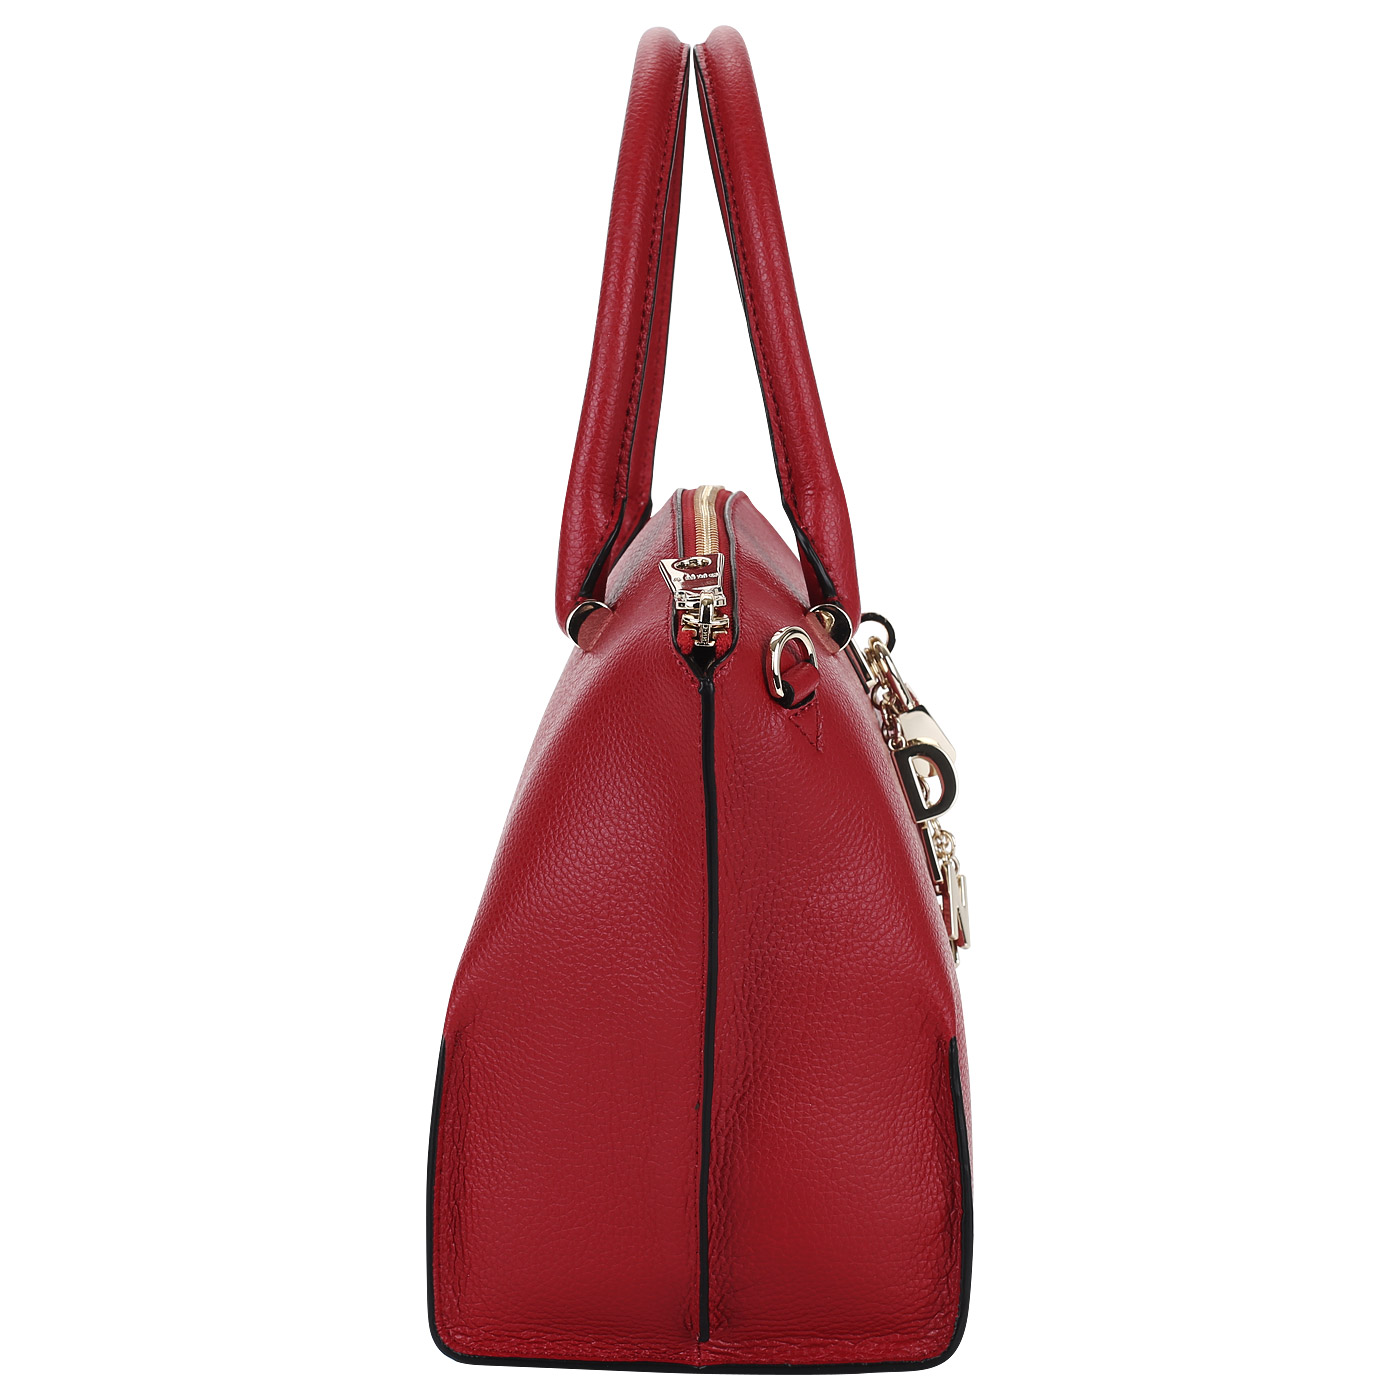 Красная кожаная сумка DKNY Elissa